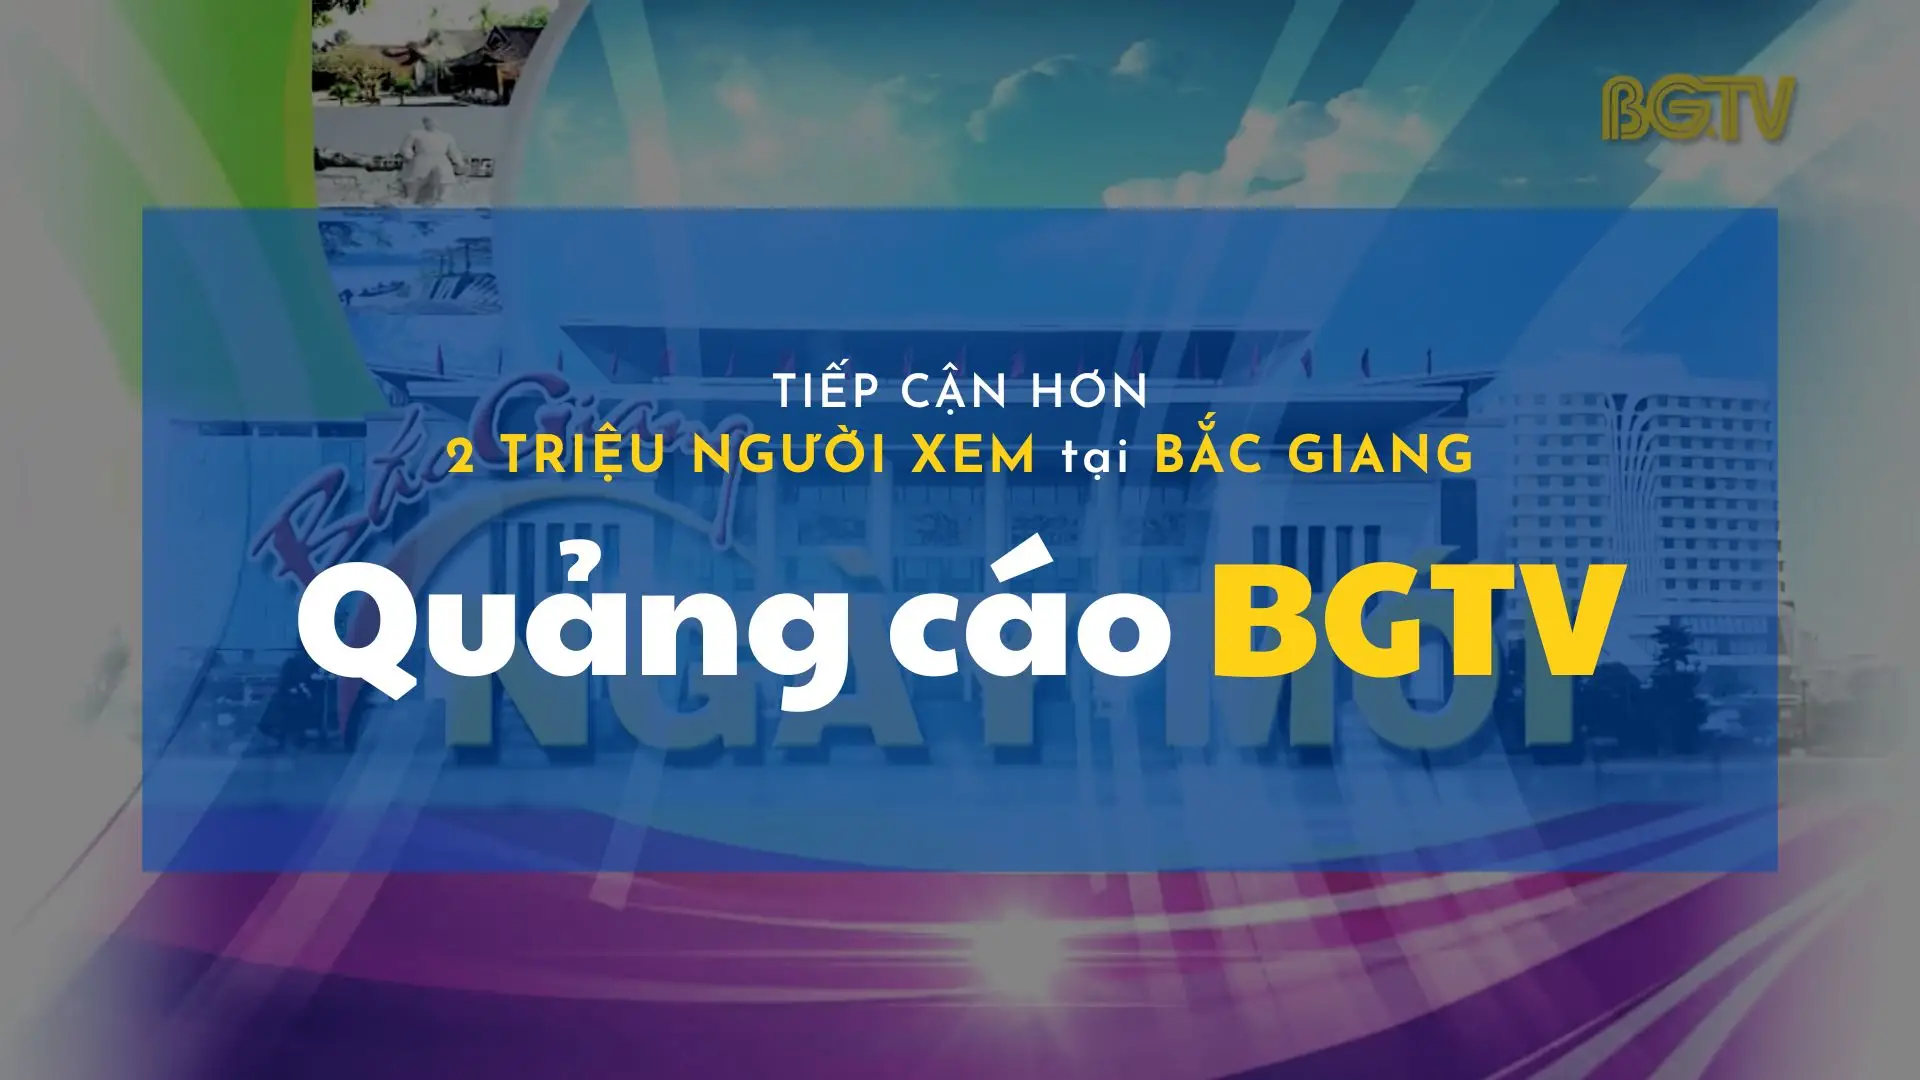 Quảng cáo BGTV – Tiếp cận hơn 2 triệu người xem Bắc Giang – UPDATED: 02-05-24